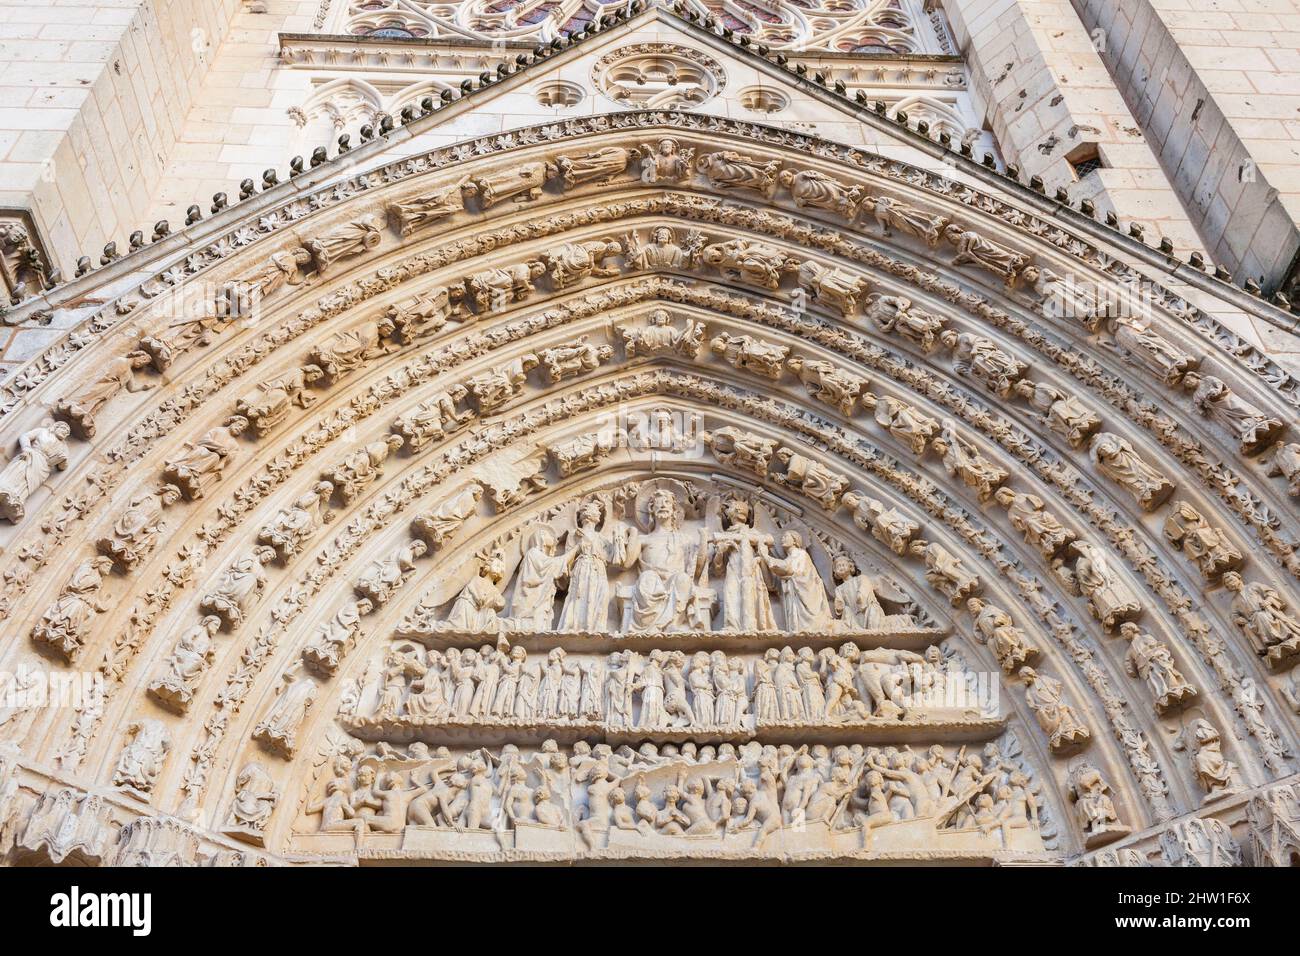 France, Vienne, Poitiers, cathédrale Saint-Pierre, détail du tympan sculpté surmontant le portail ouest Banque D'Images